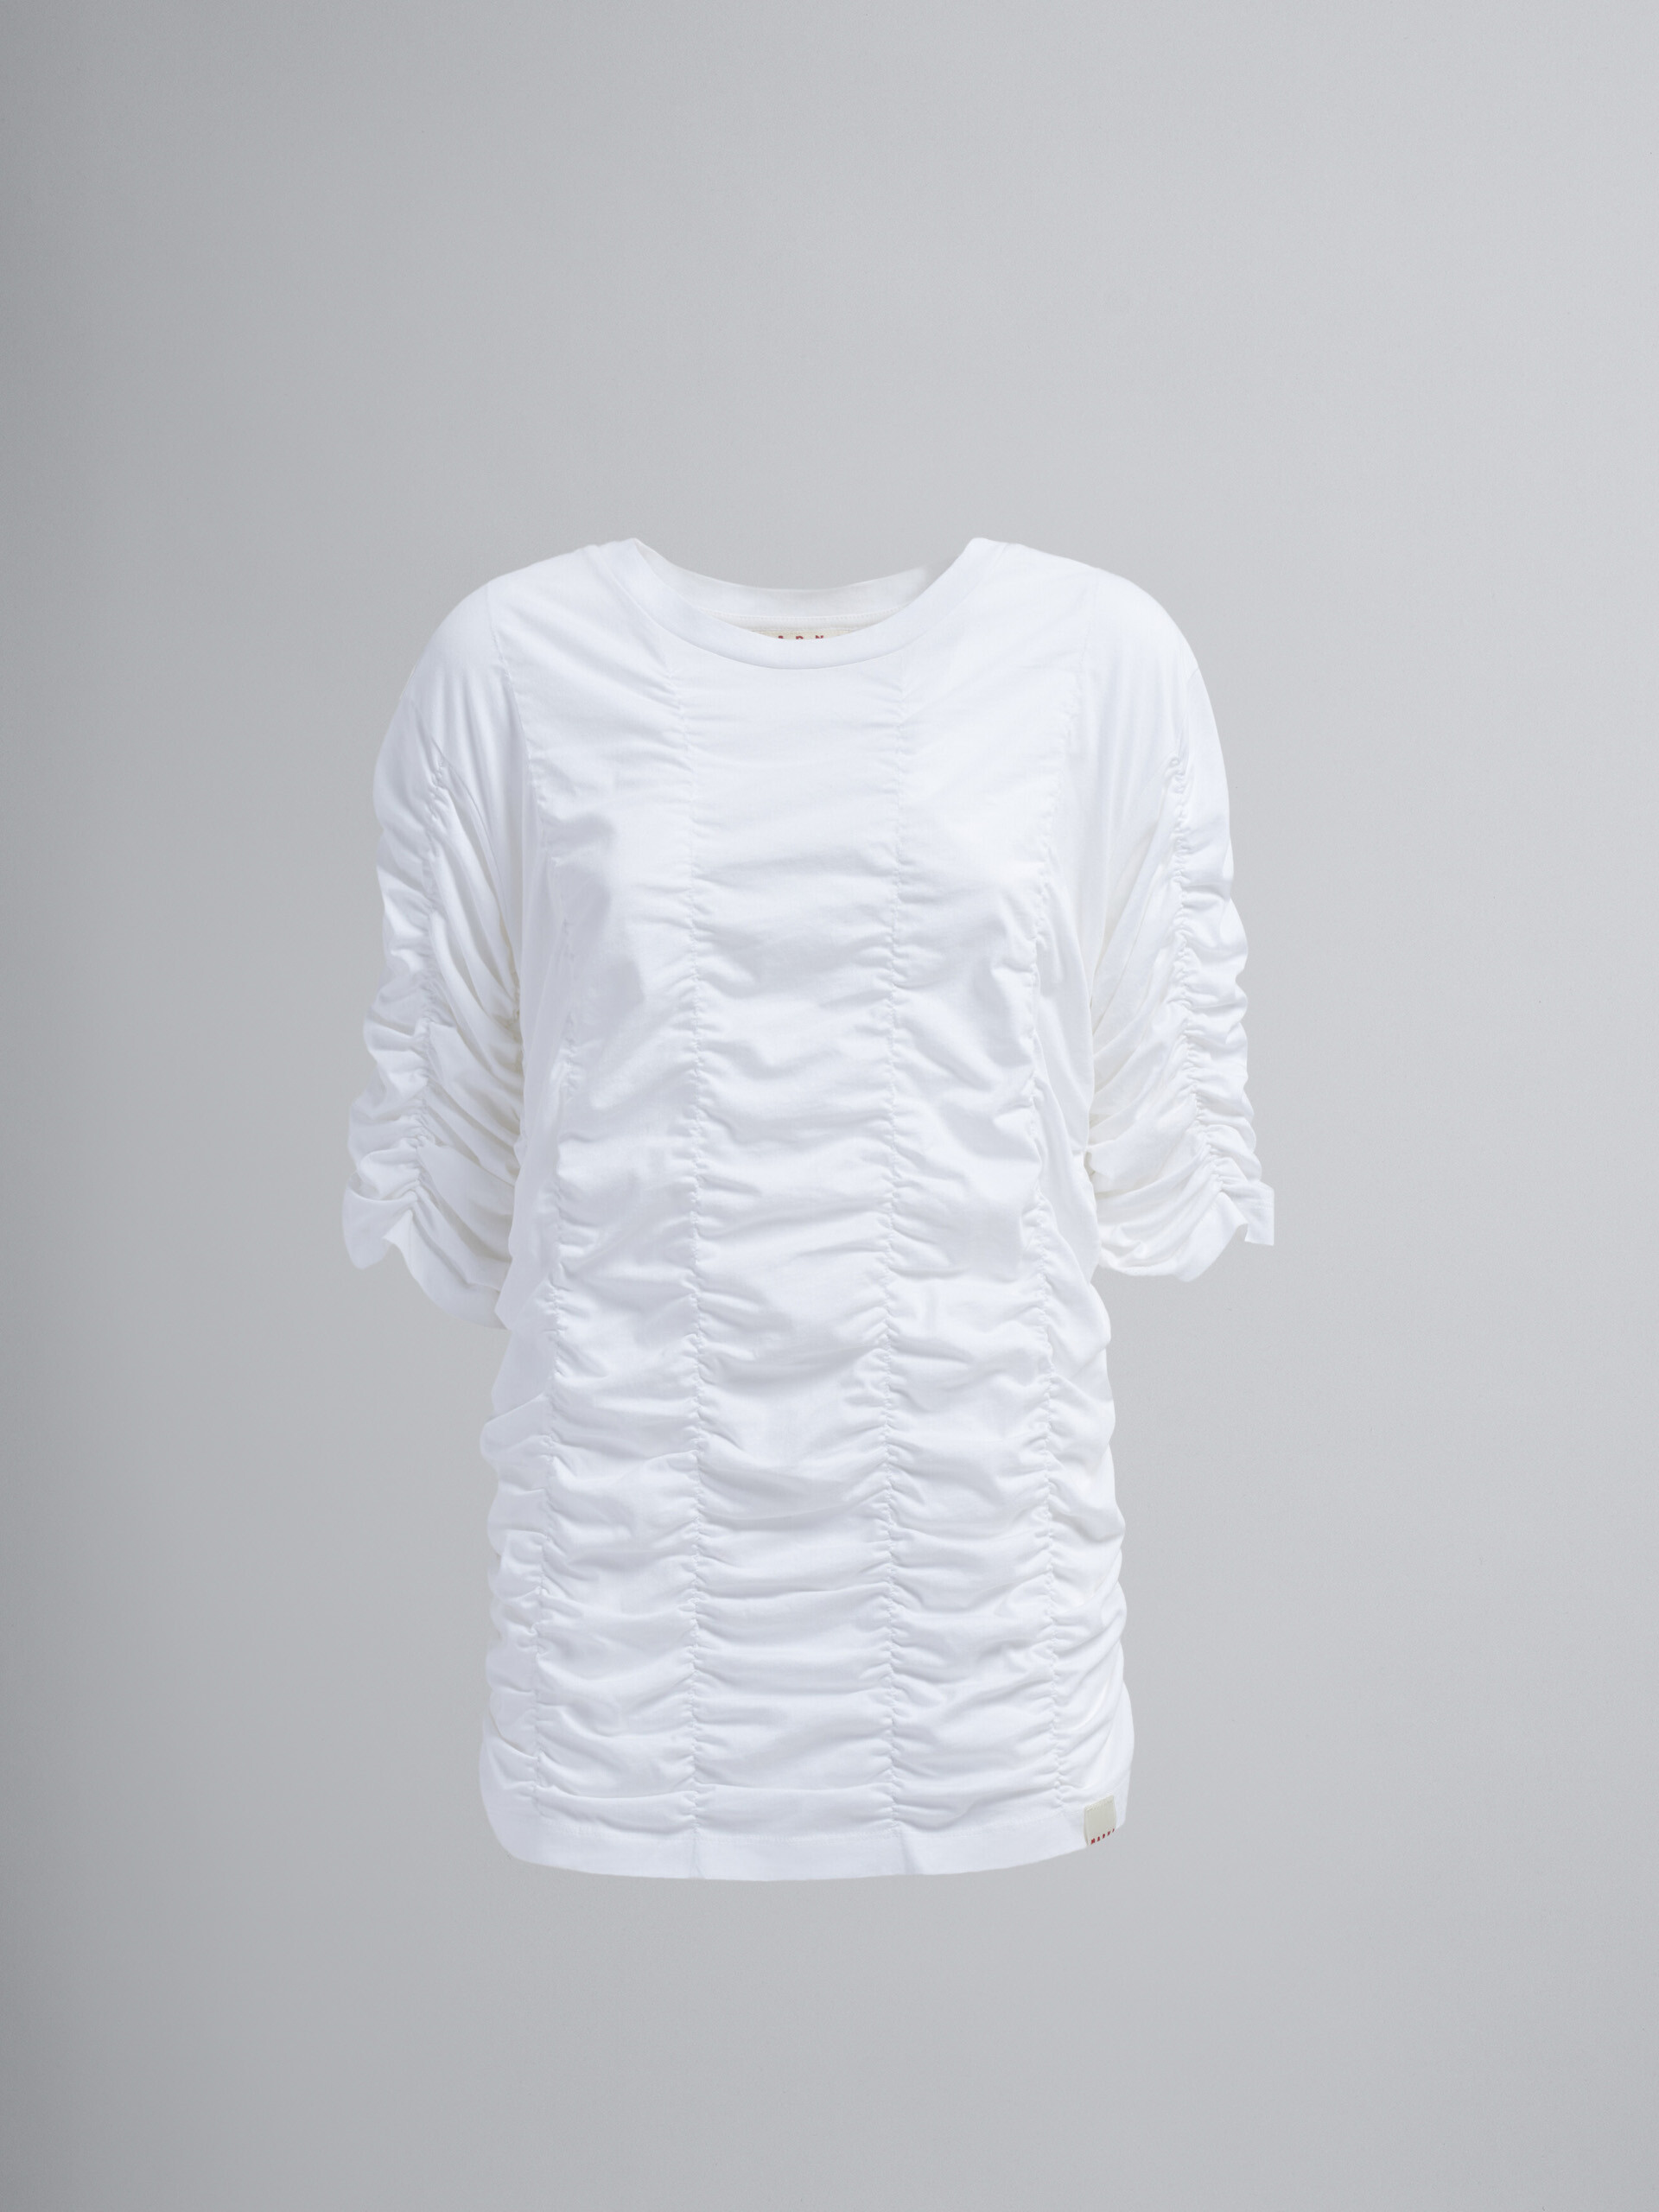 Organic cotton jersey T-shirt - T-shirts - Image 1